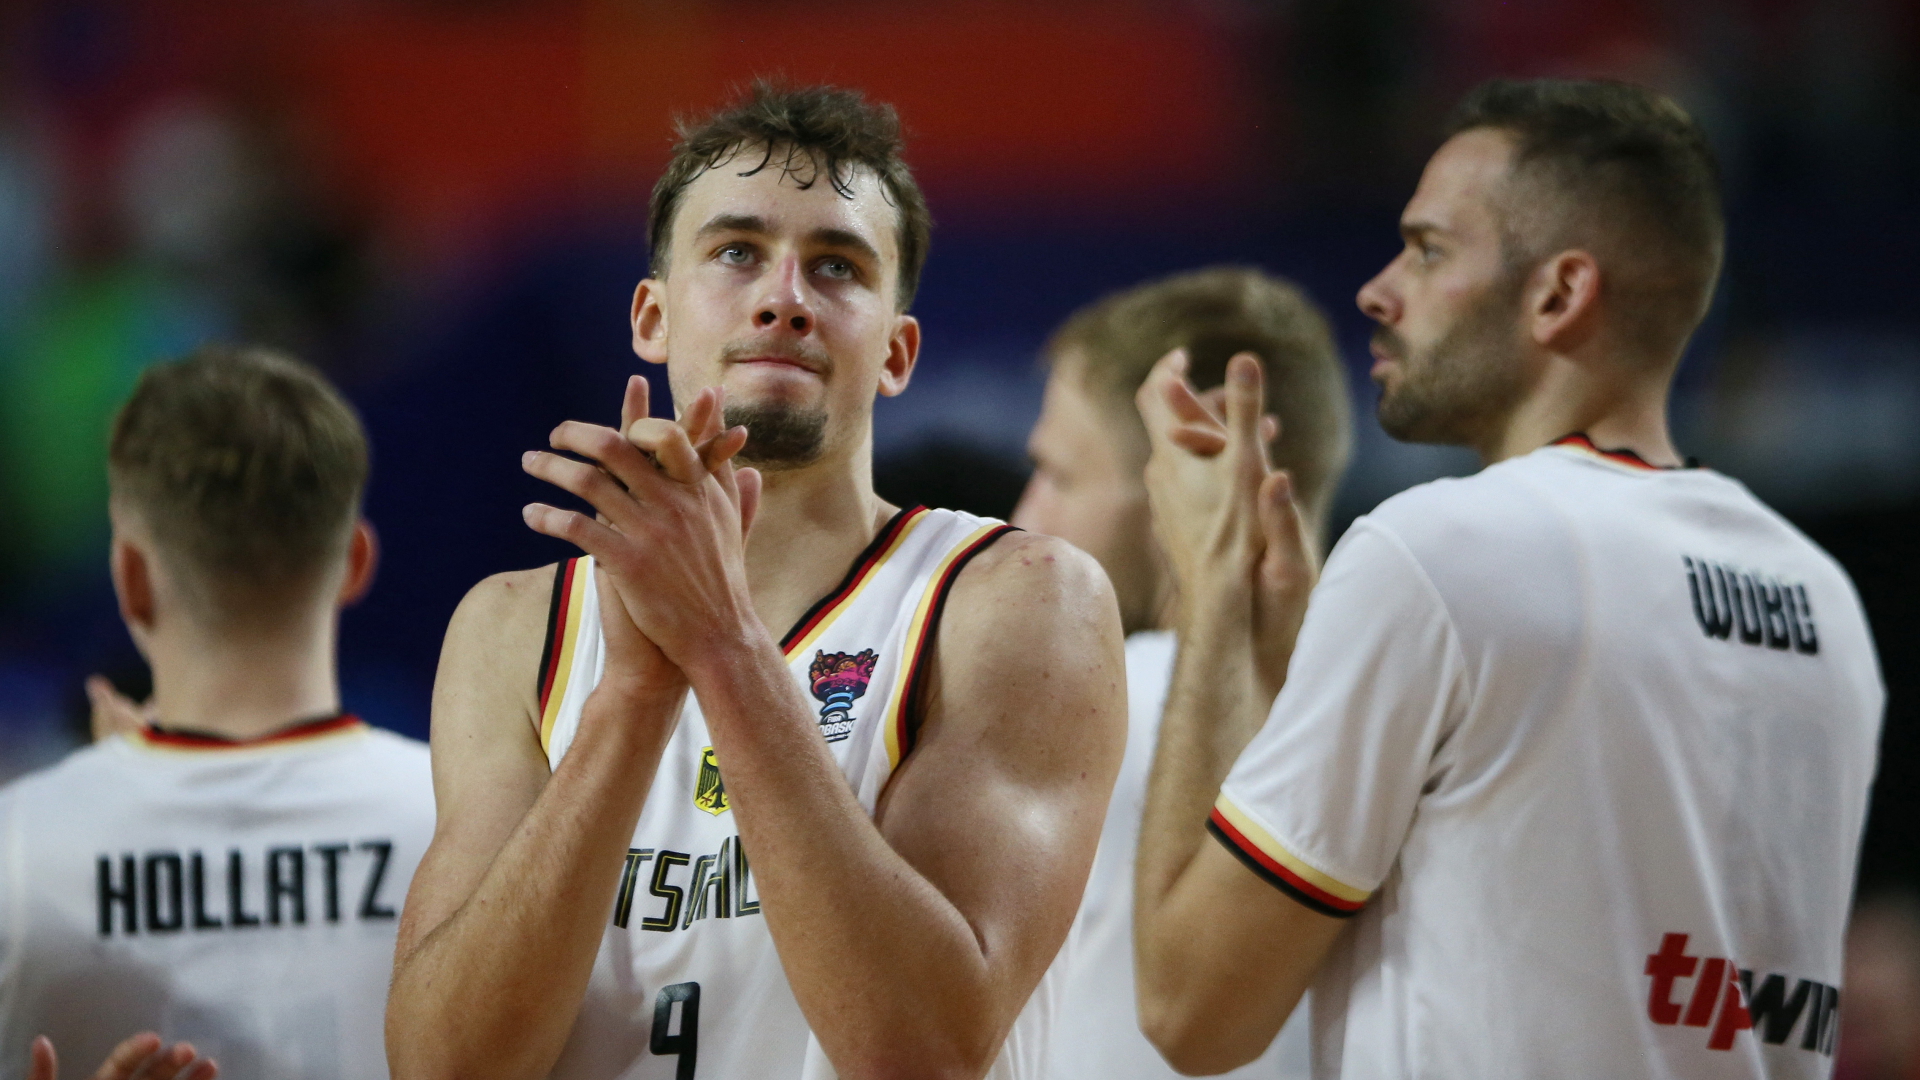 Niedergeschlagenheit bei den deutschen Basketballern nach dem Spiel gegen Slowenien | REUTERS